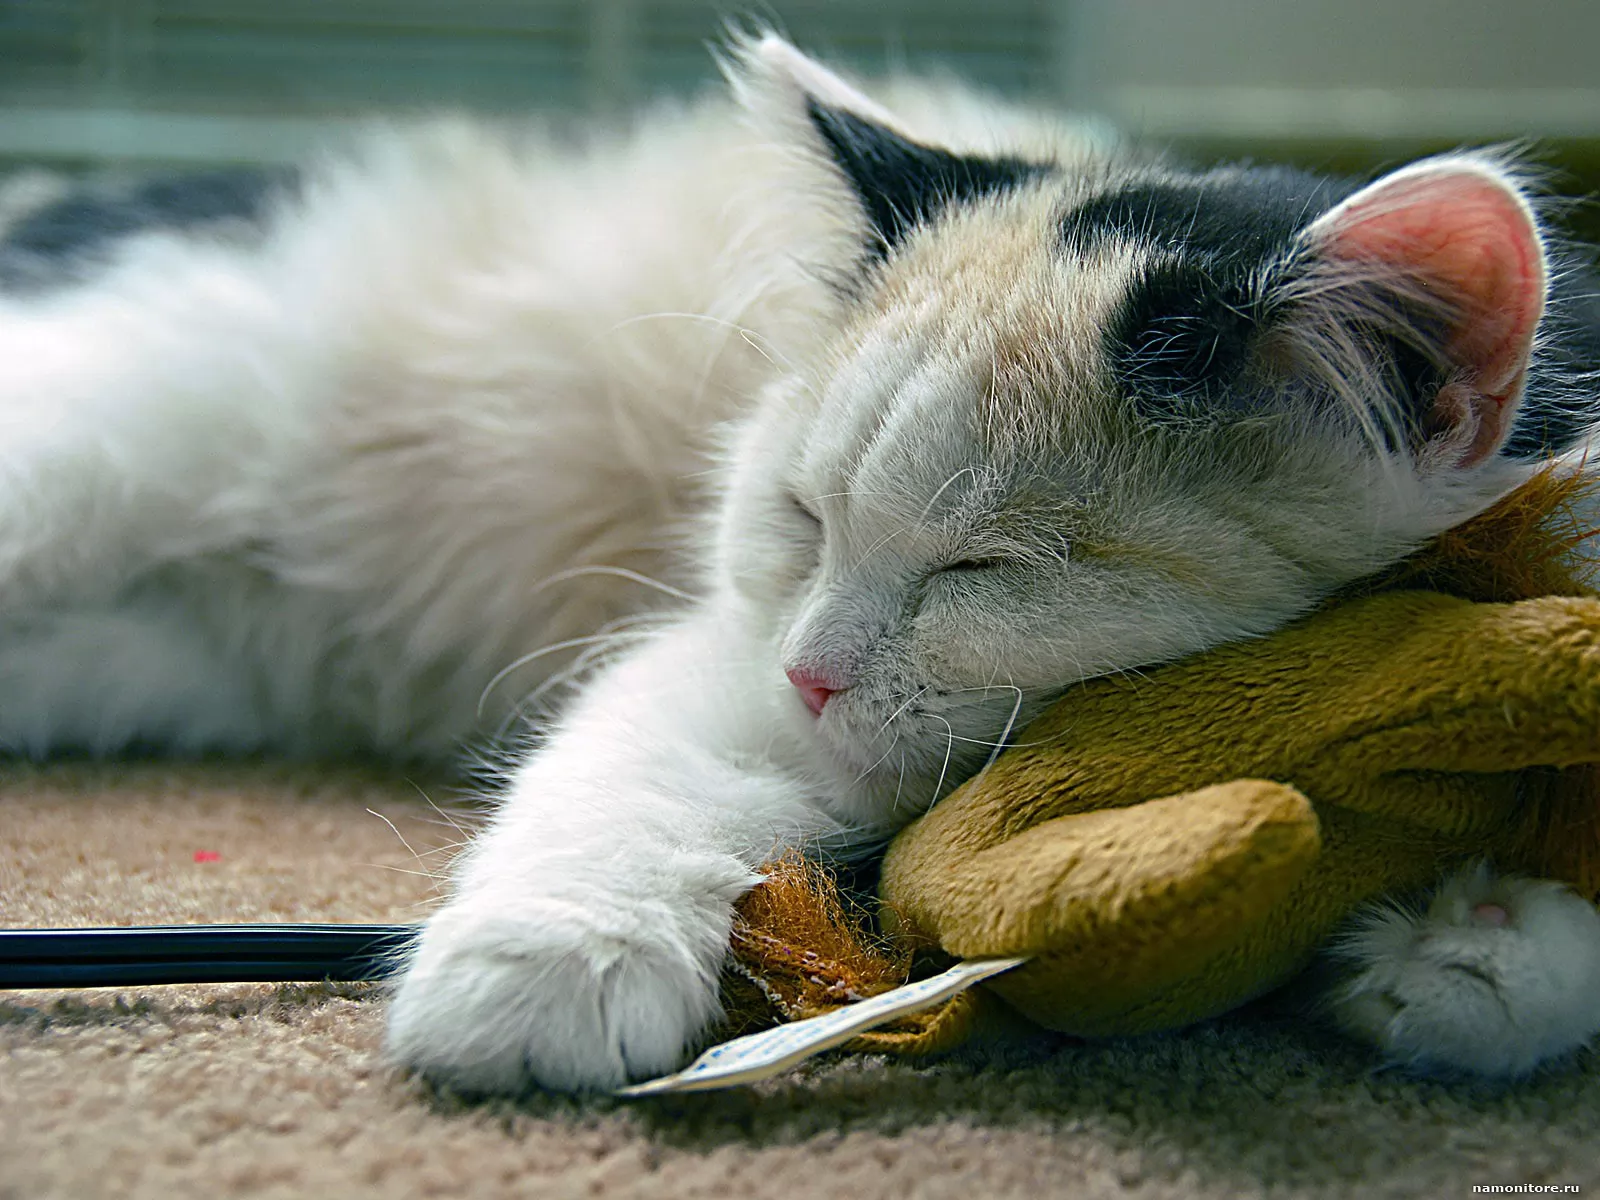 Спи спокойно словно. Спокойный кот. Спящий кот. Спящие котики. Сонный кот.